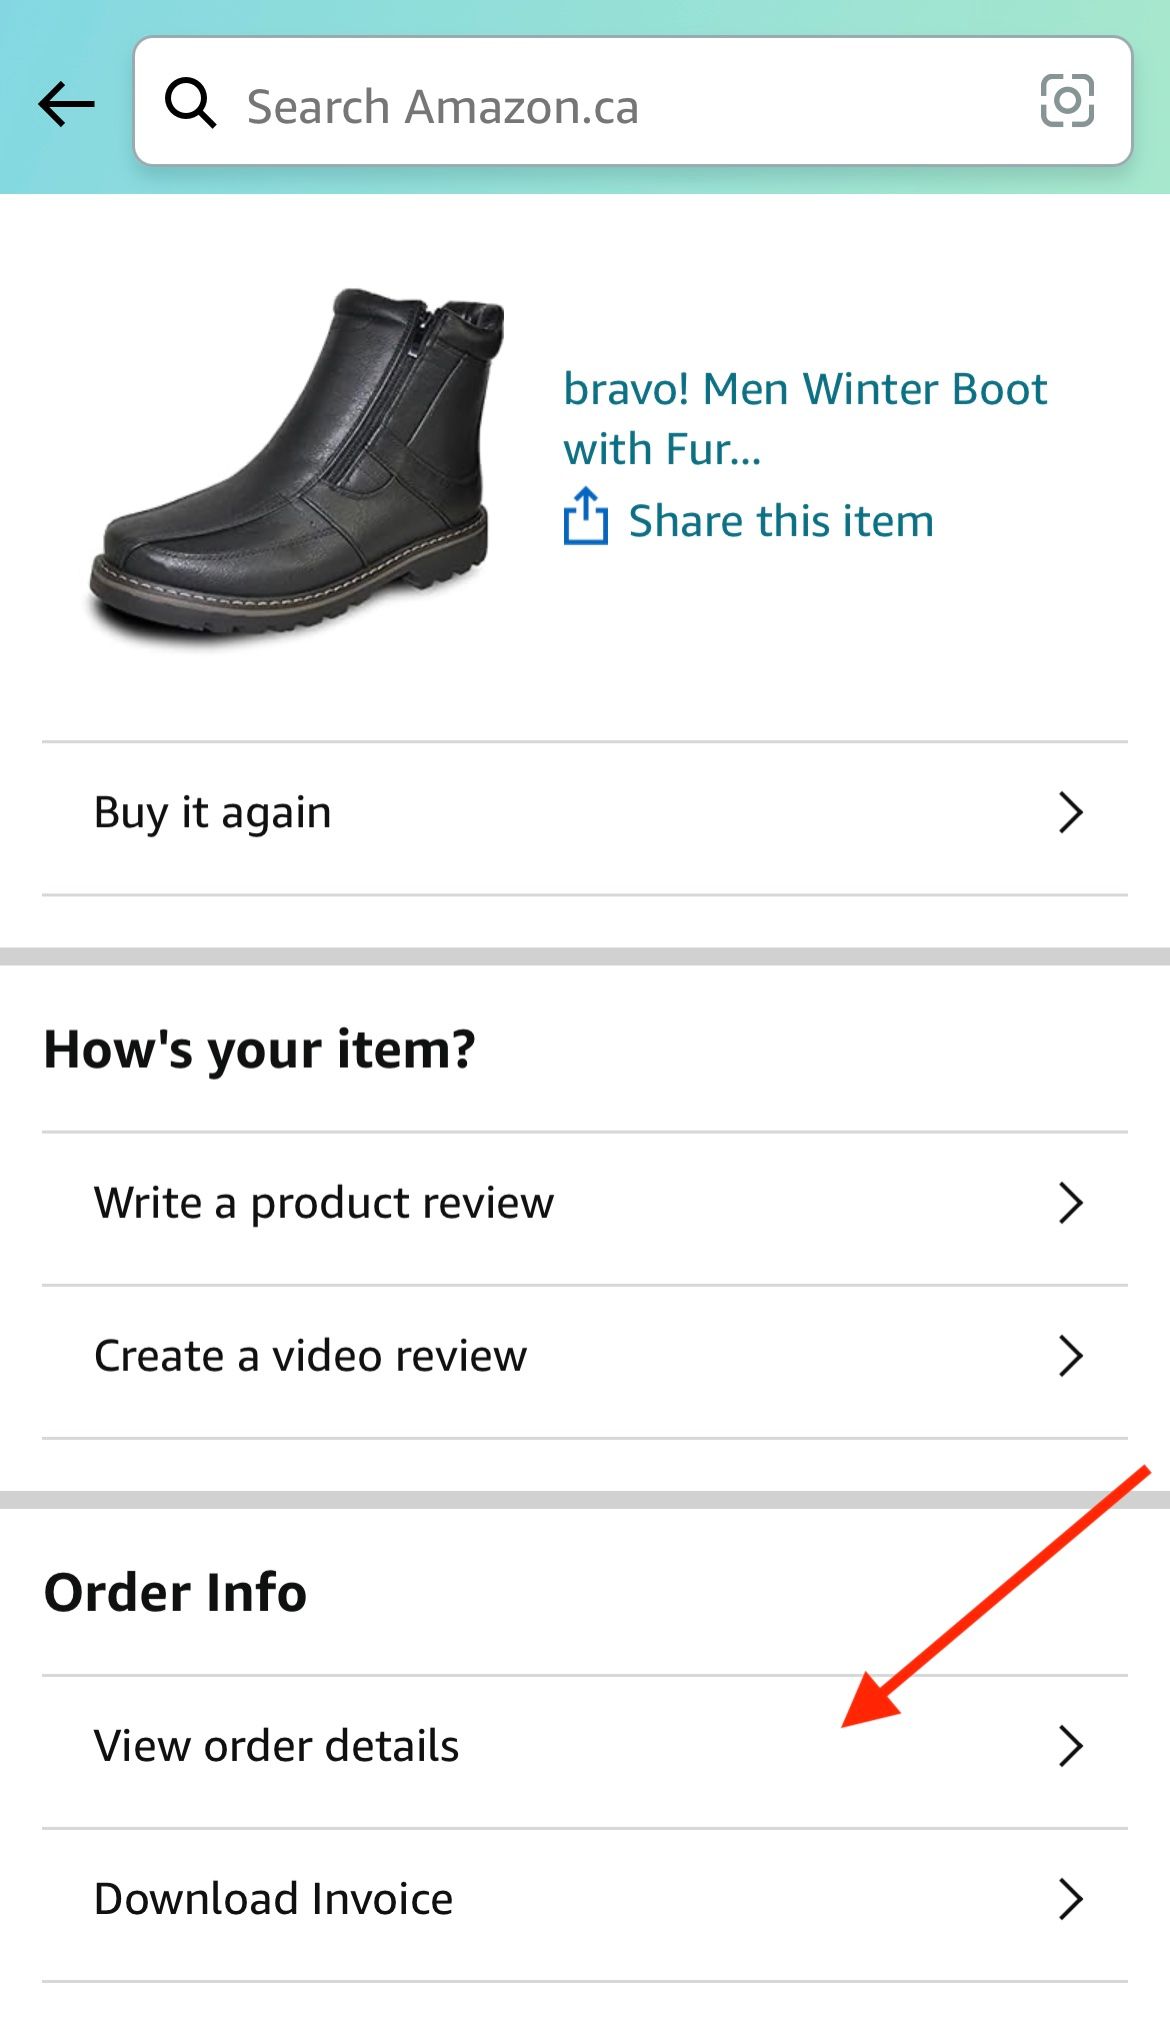 O aplicativo móvel da Amazon mostra o pedido de botas de inverno masculinas com uma seta vermelha apontando para Ver detalhes do pedido.